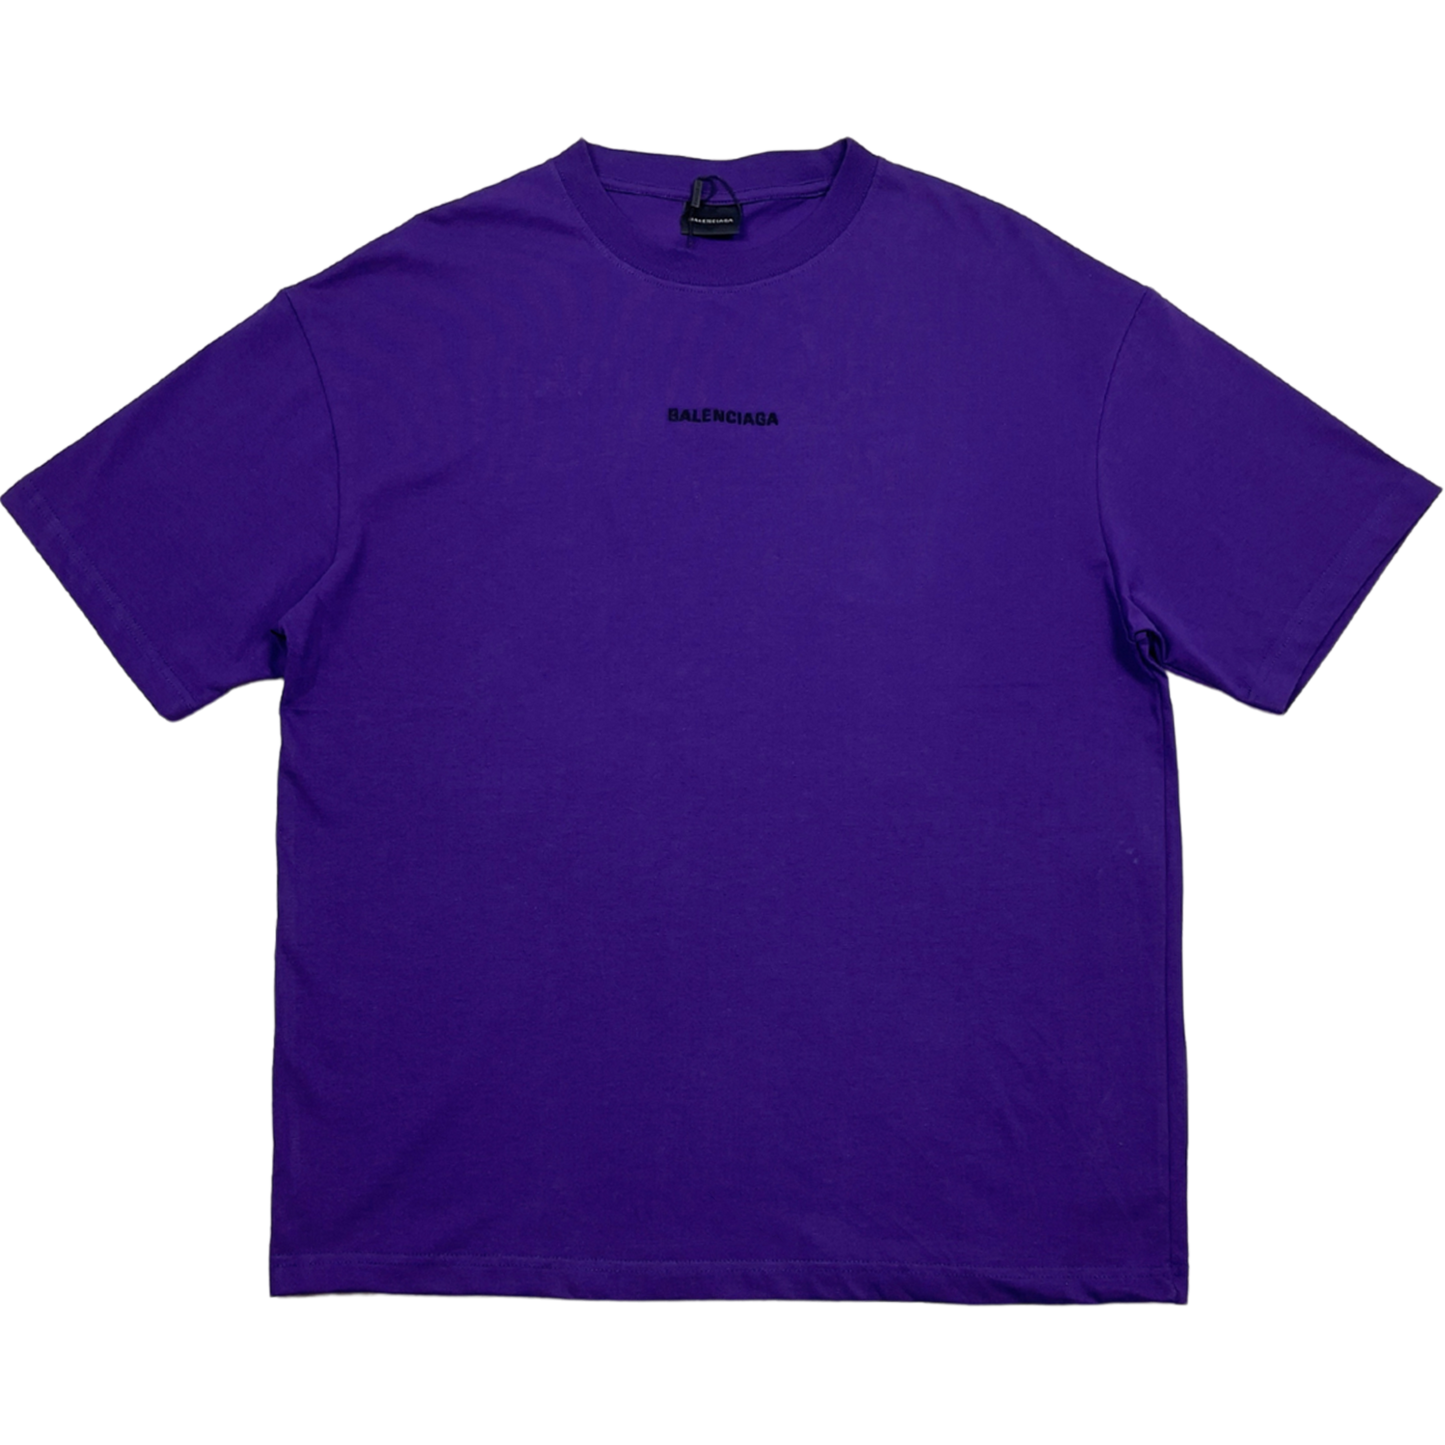 T-shirt violet Balenciaga avec logo